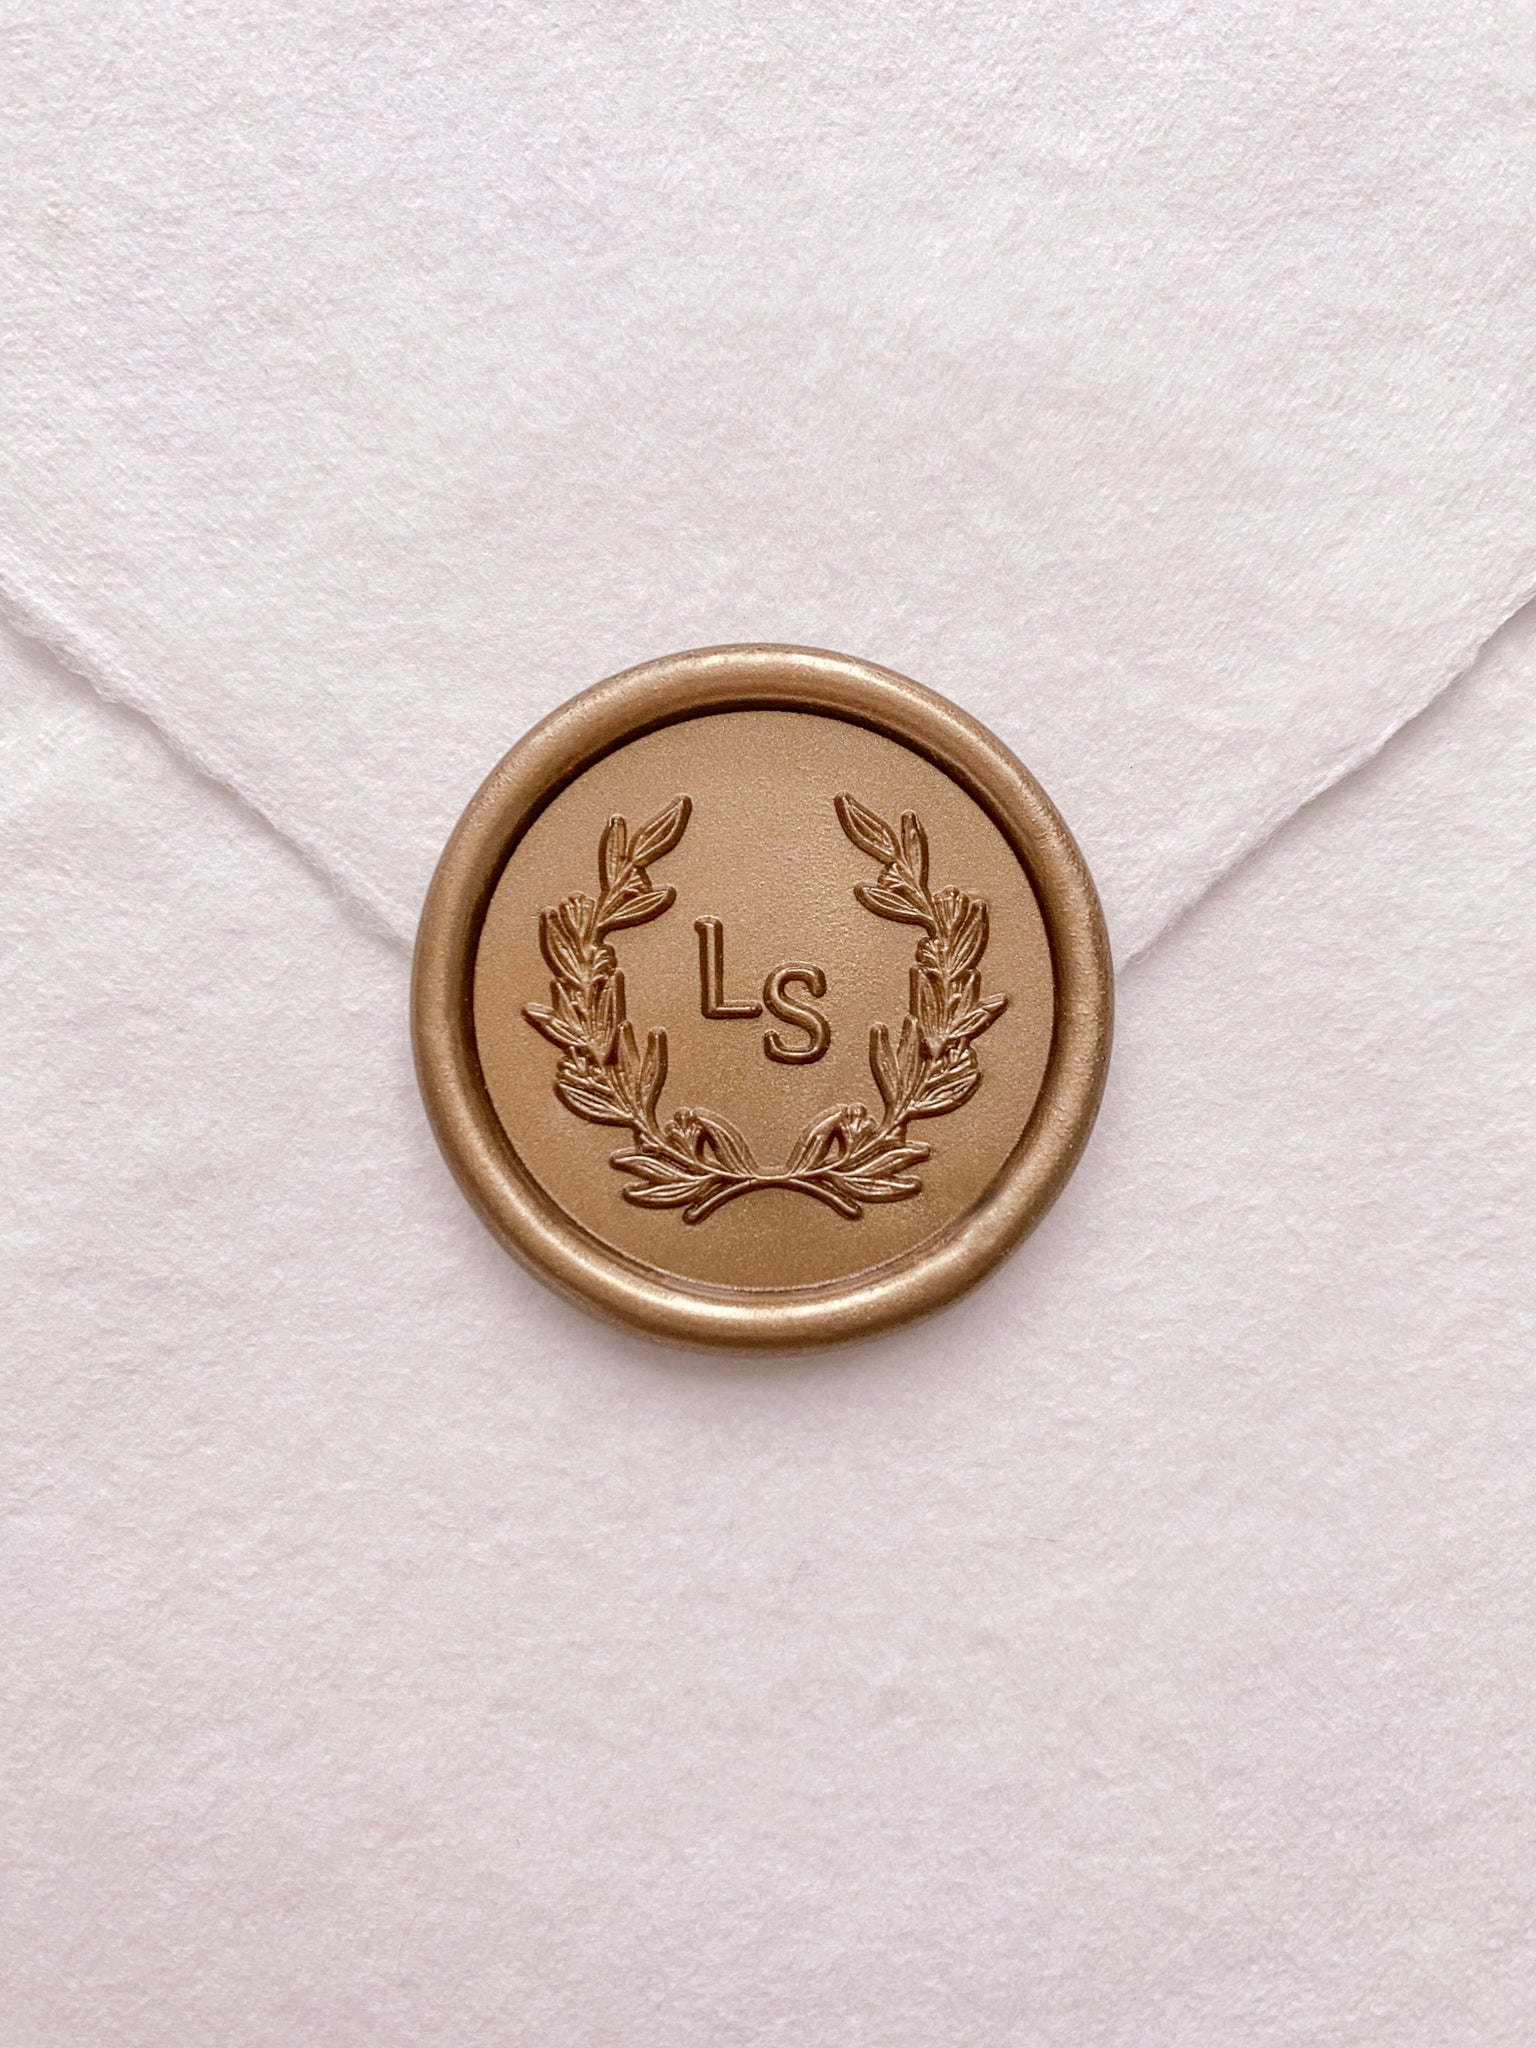 Leaf wreath monogram gold custom wax seal on beige handmade paper envelope